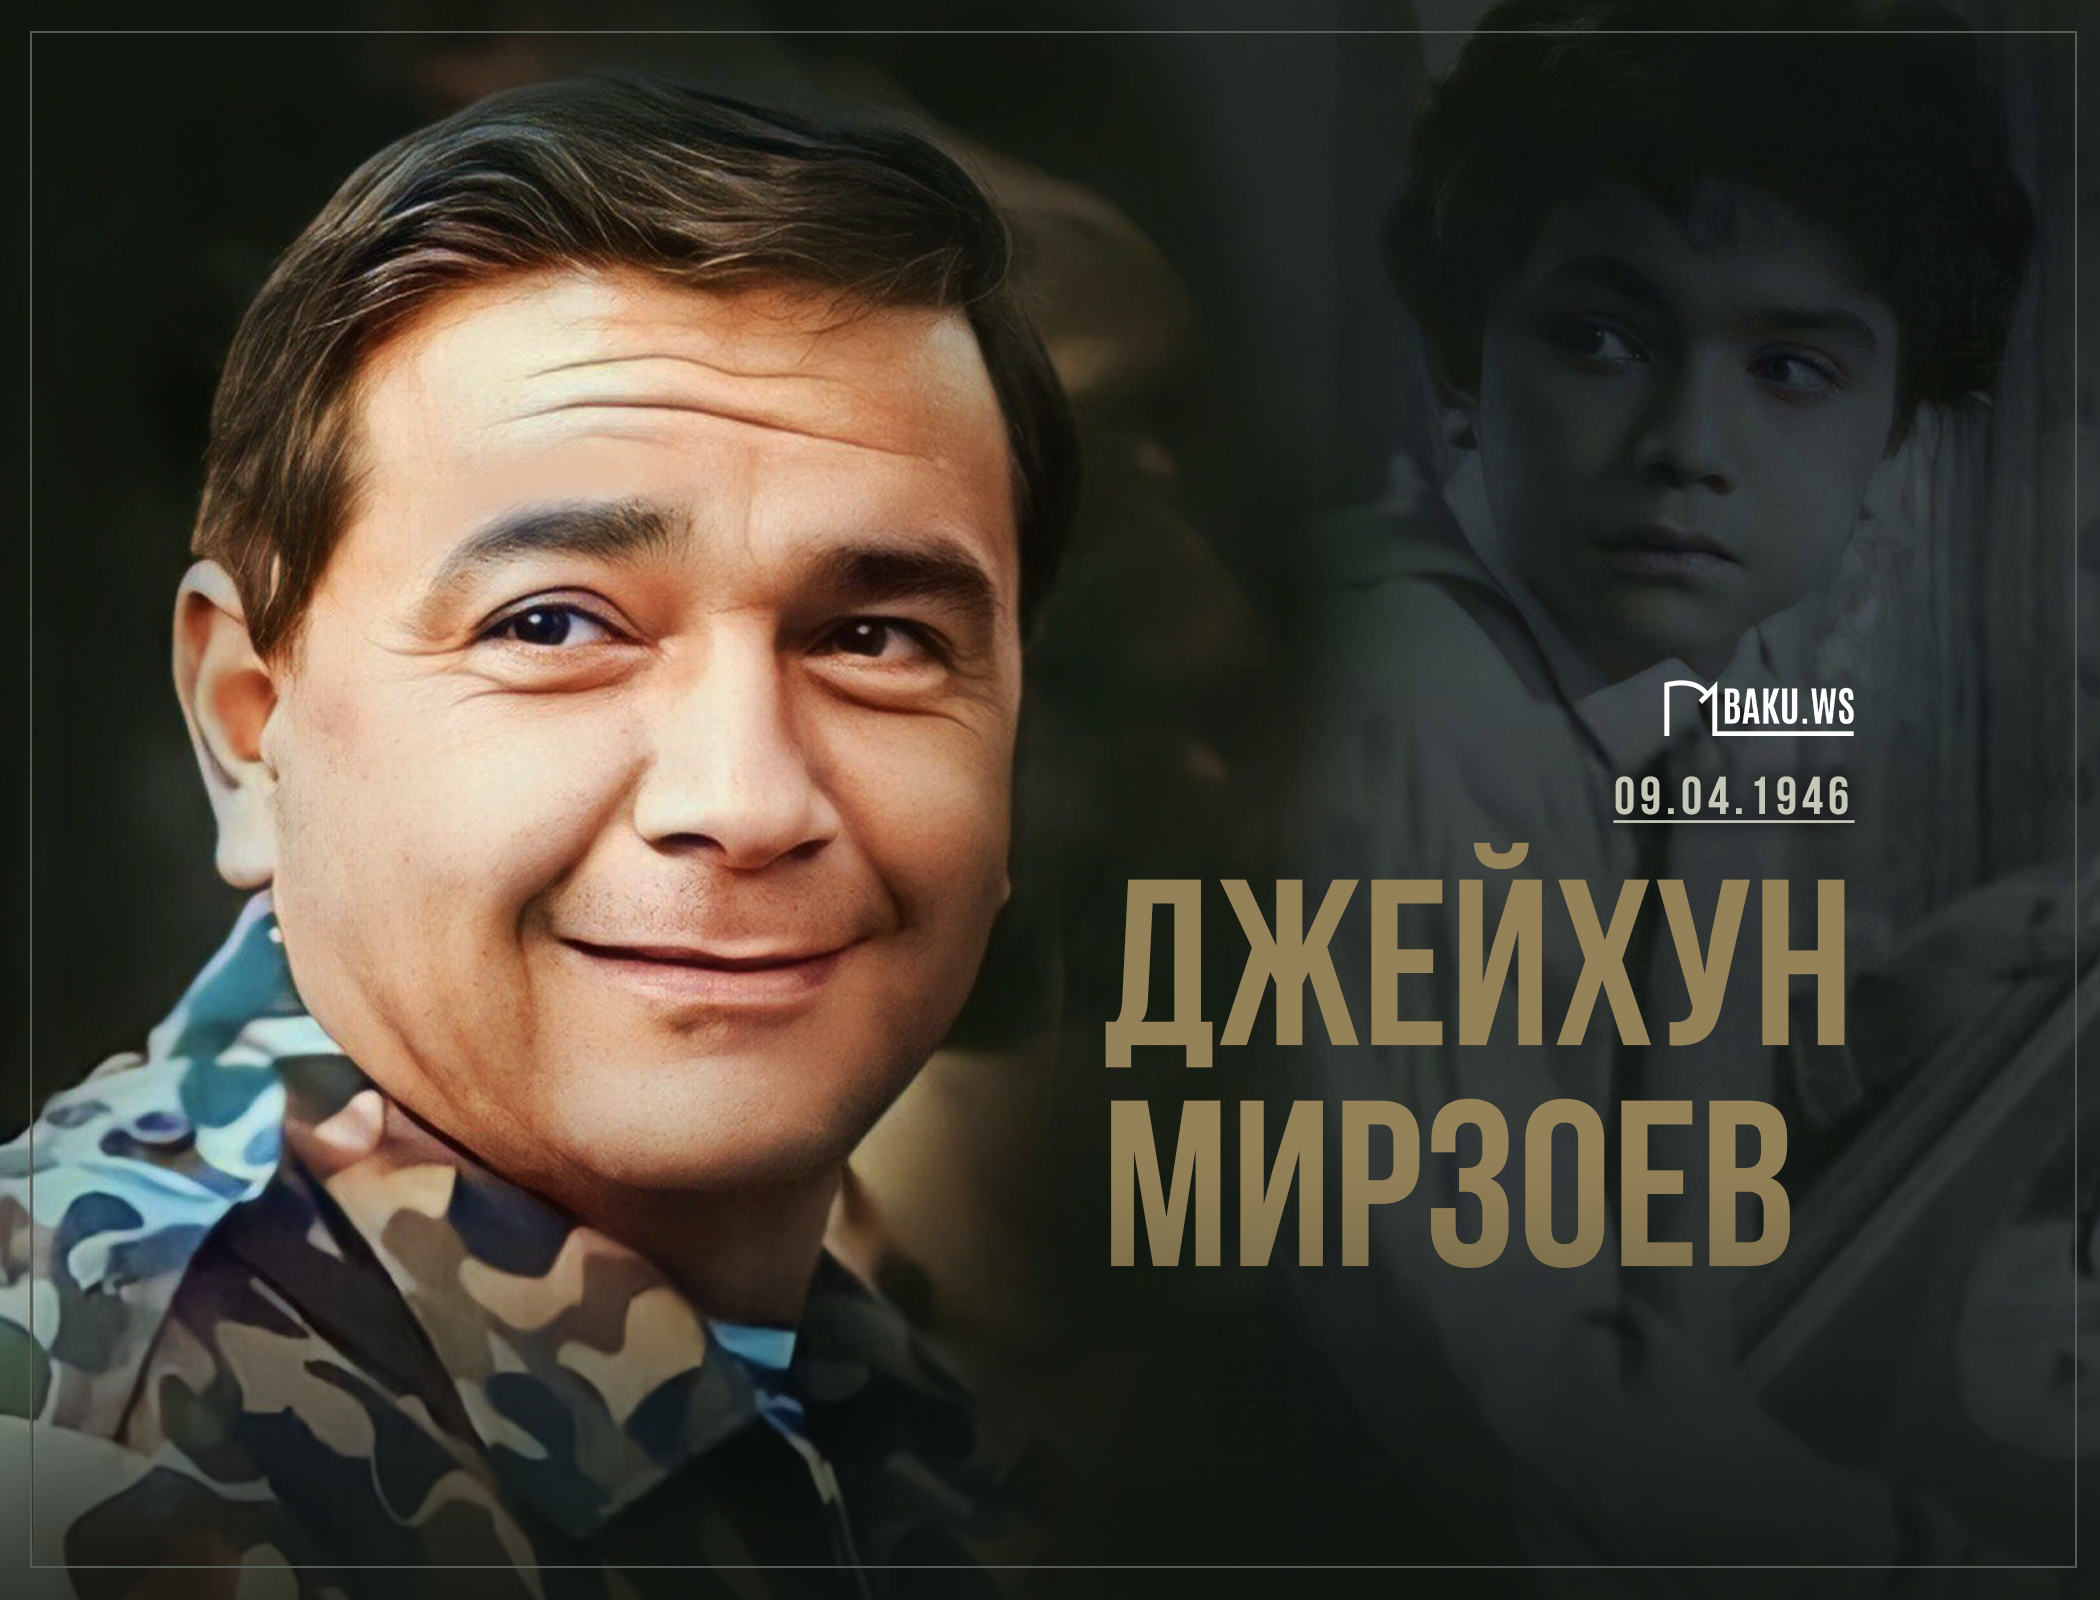 Исполняется 77 лет со дня рождения известного актера и режиссера Джейхуна Мирзоева